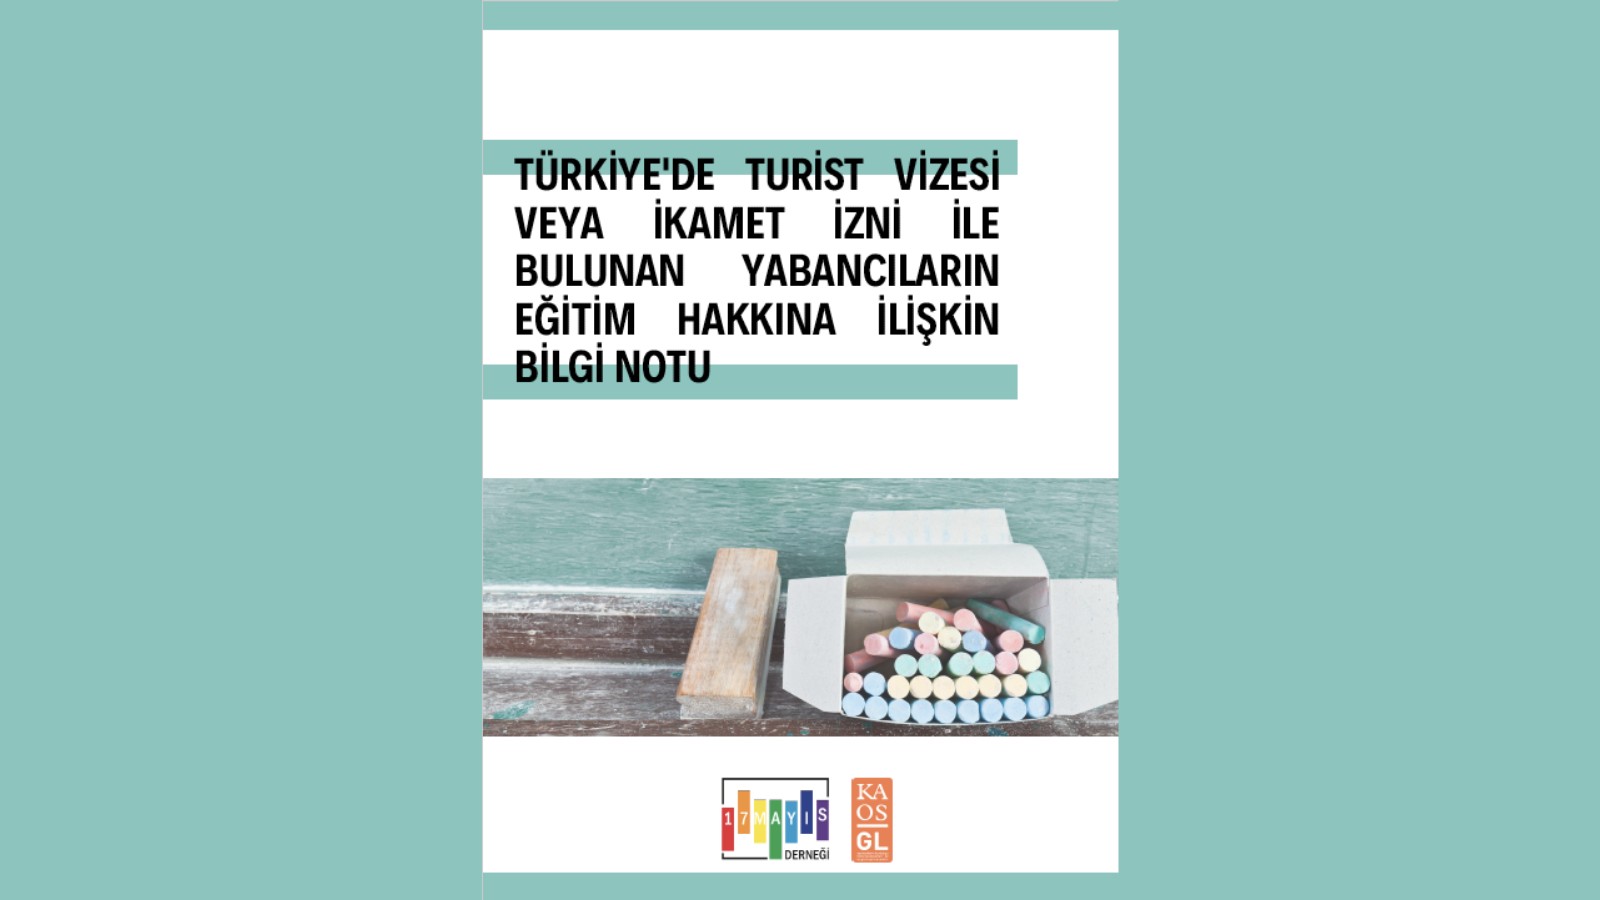 Türkiye’de Bulunan Yabancıların Eğitim Hakkına İlişki̇n Bilgi̇ Notu - 17 Mayıs